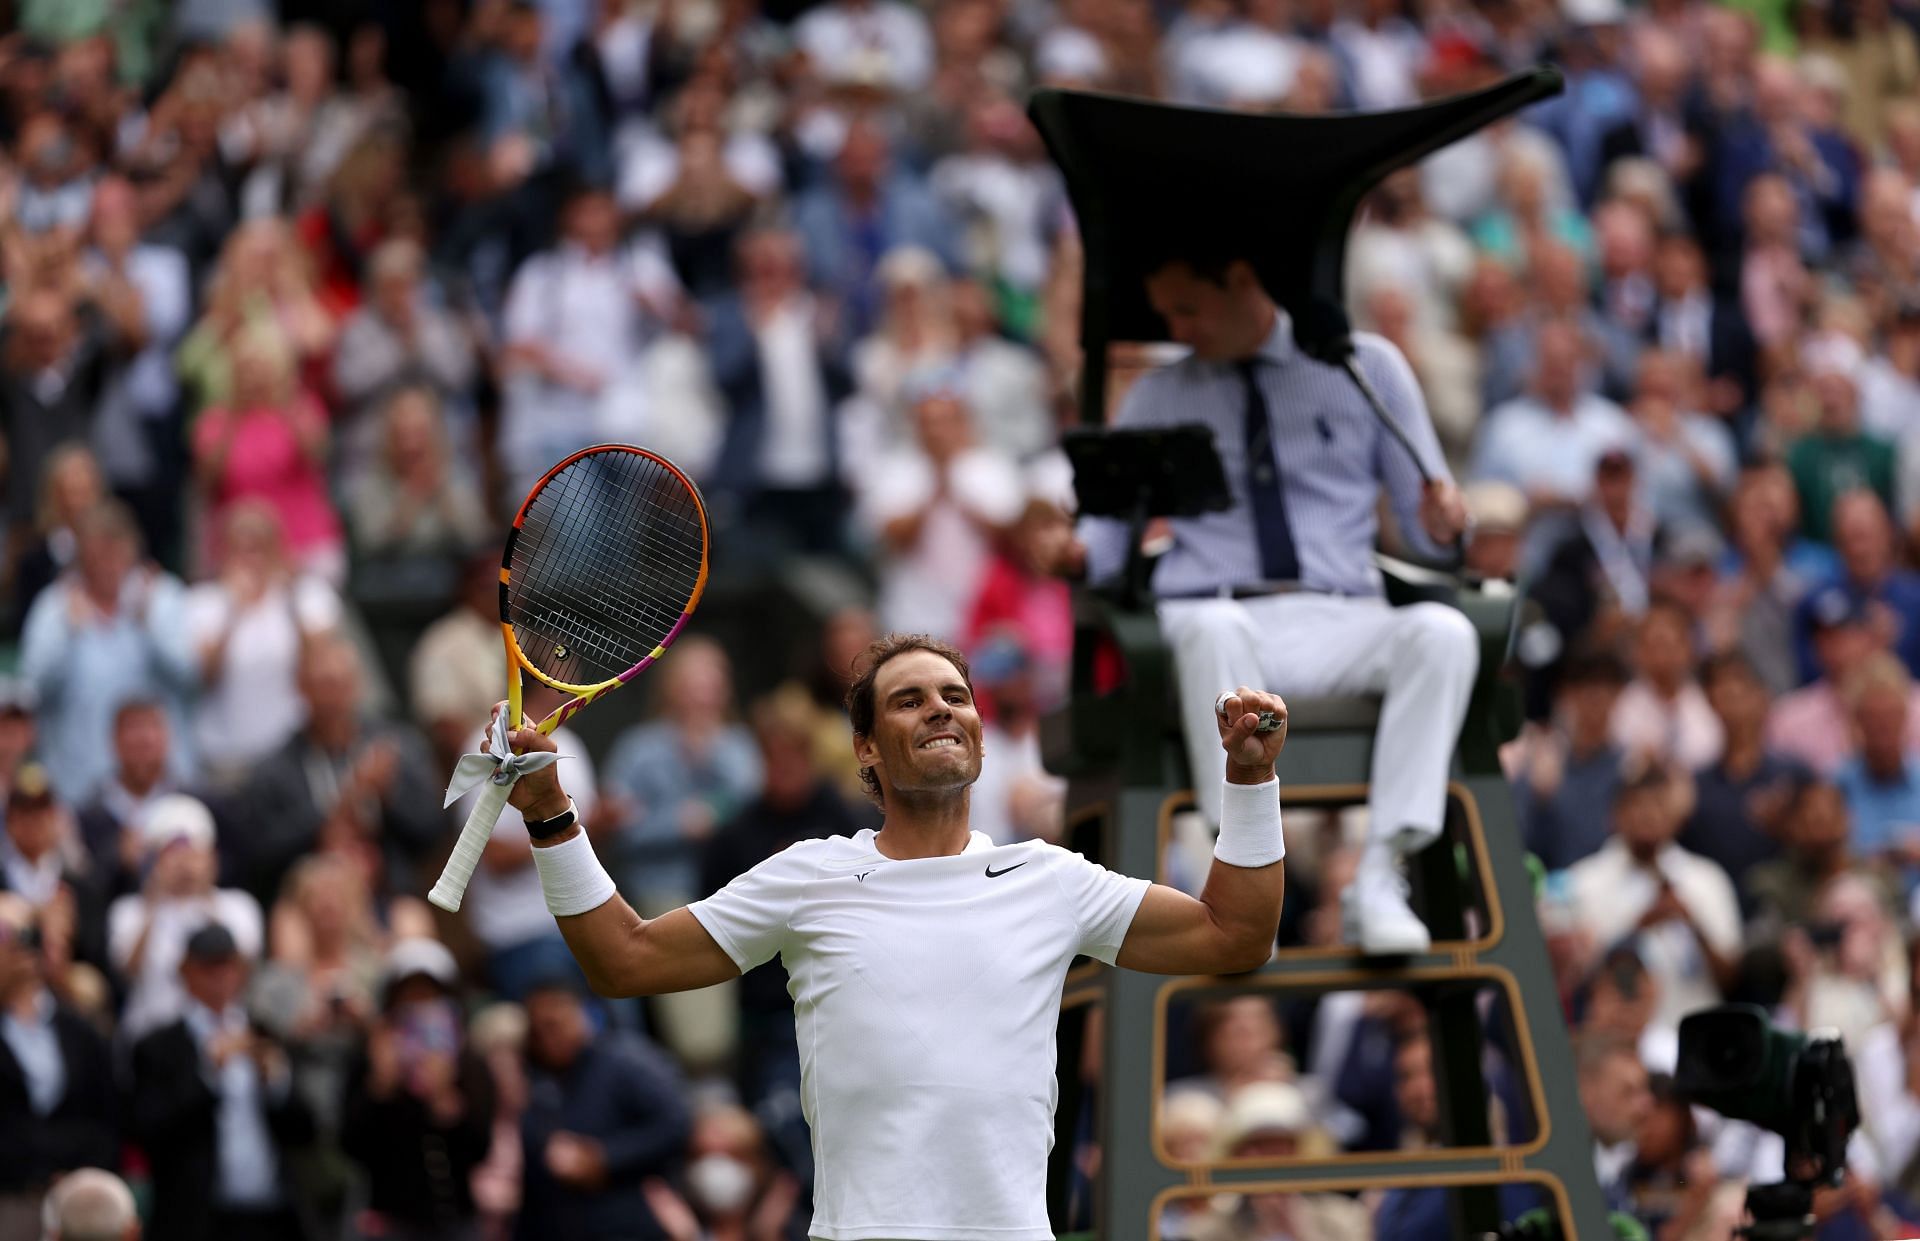 Rafael Nadal celebrates following his victory over Francisco Cerundolo.